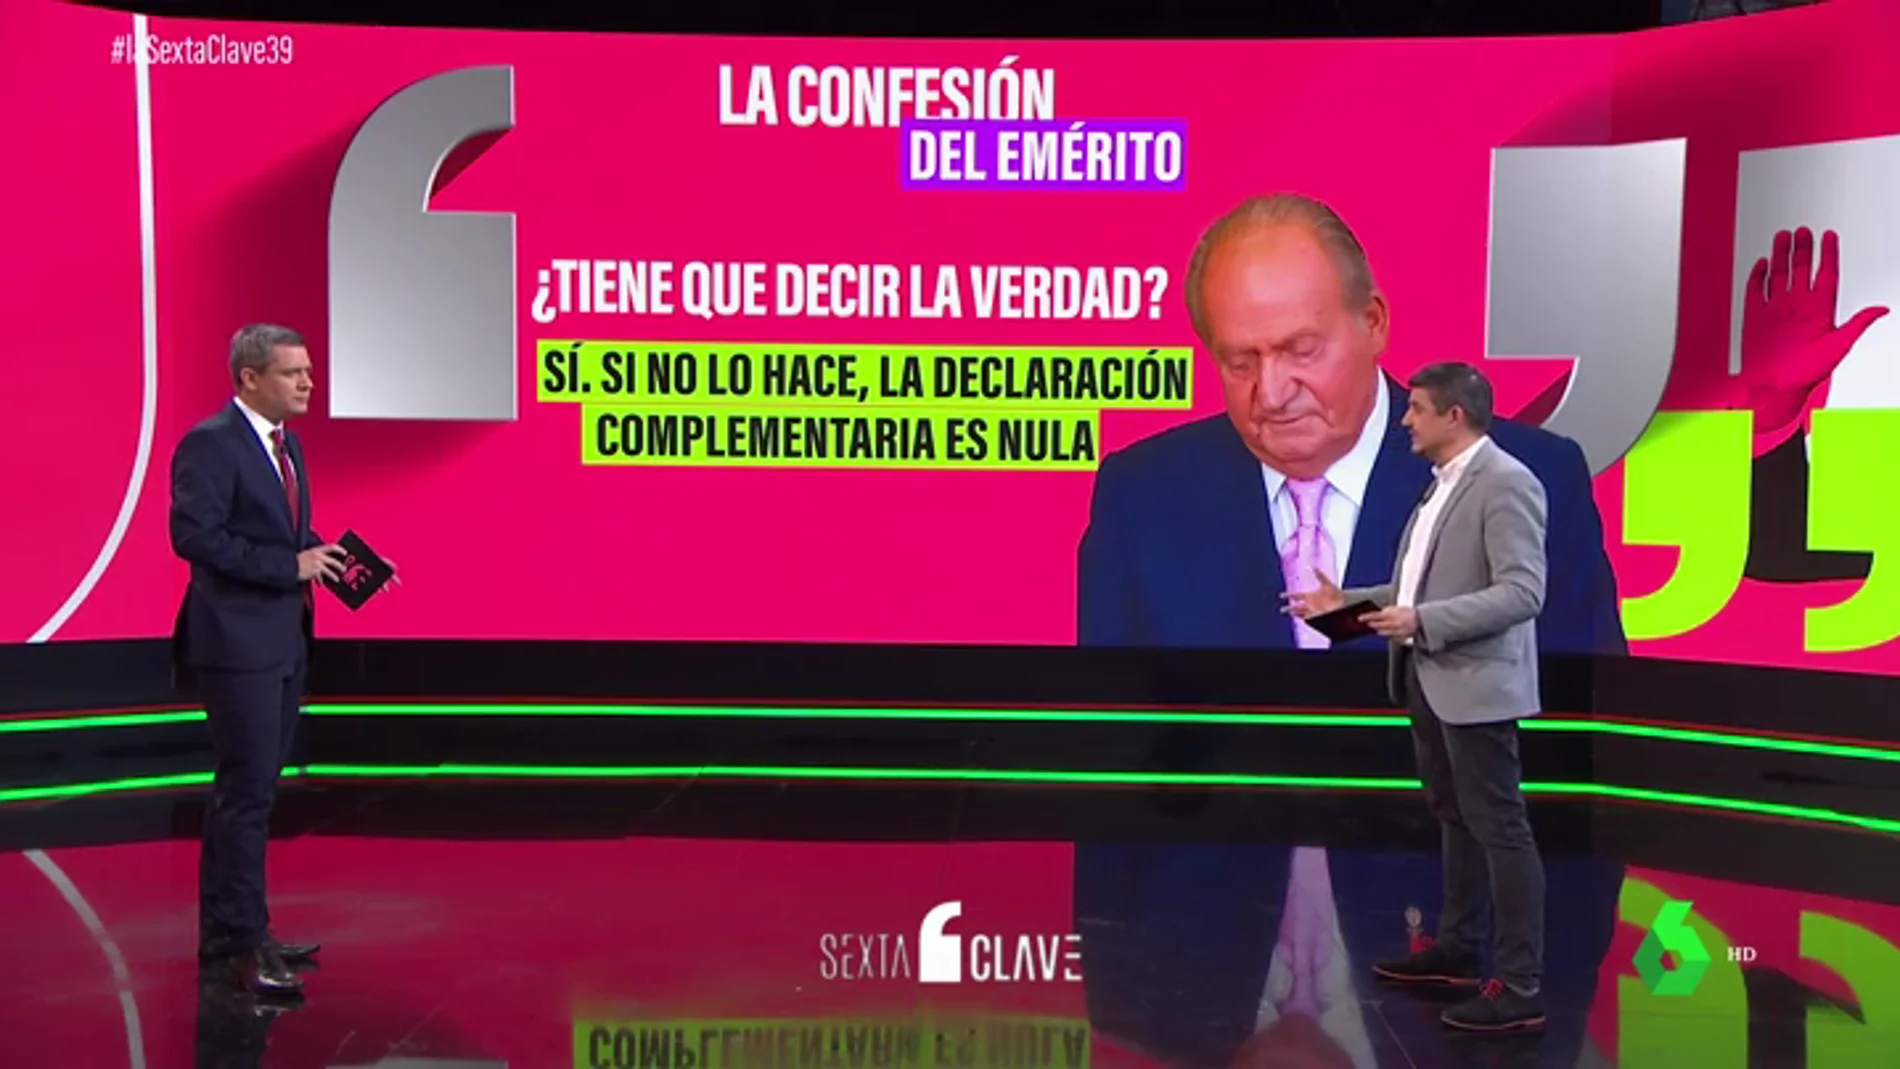 Preguntas y respuestas sobre la regularización fiscal de Juan Carlos I: ¿ha recibido un trato de favor?, ¿puede pagar con fondos no declarados?